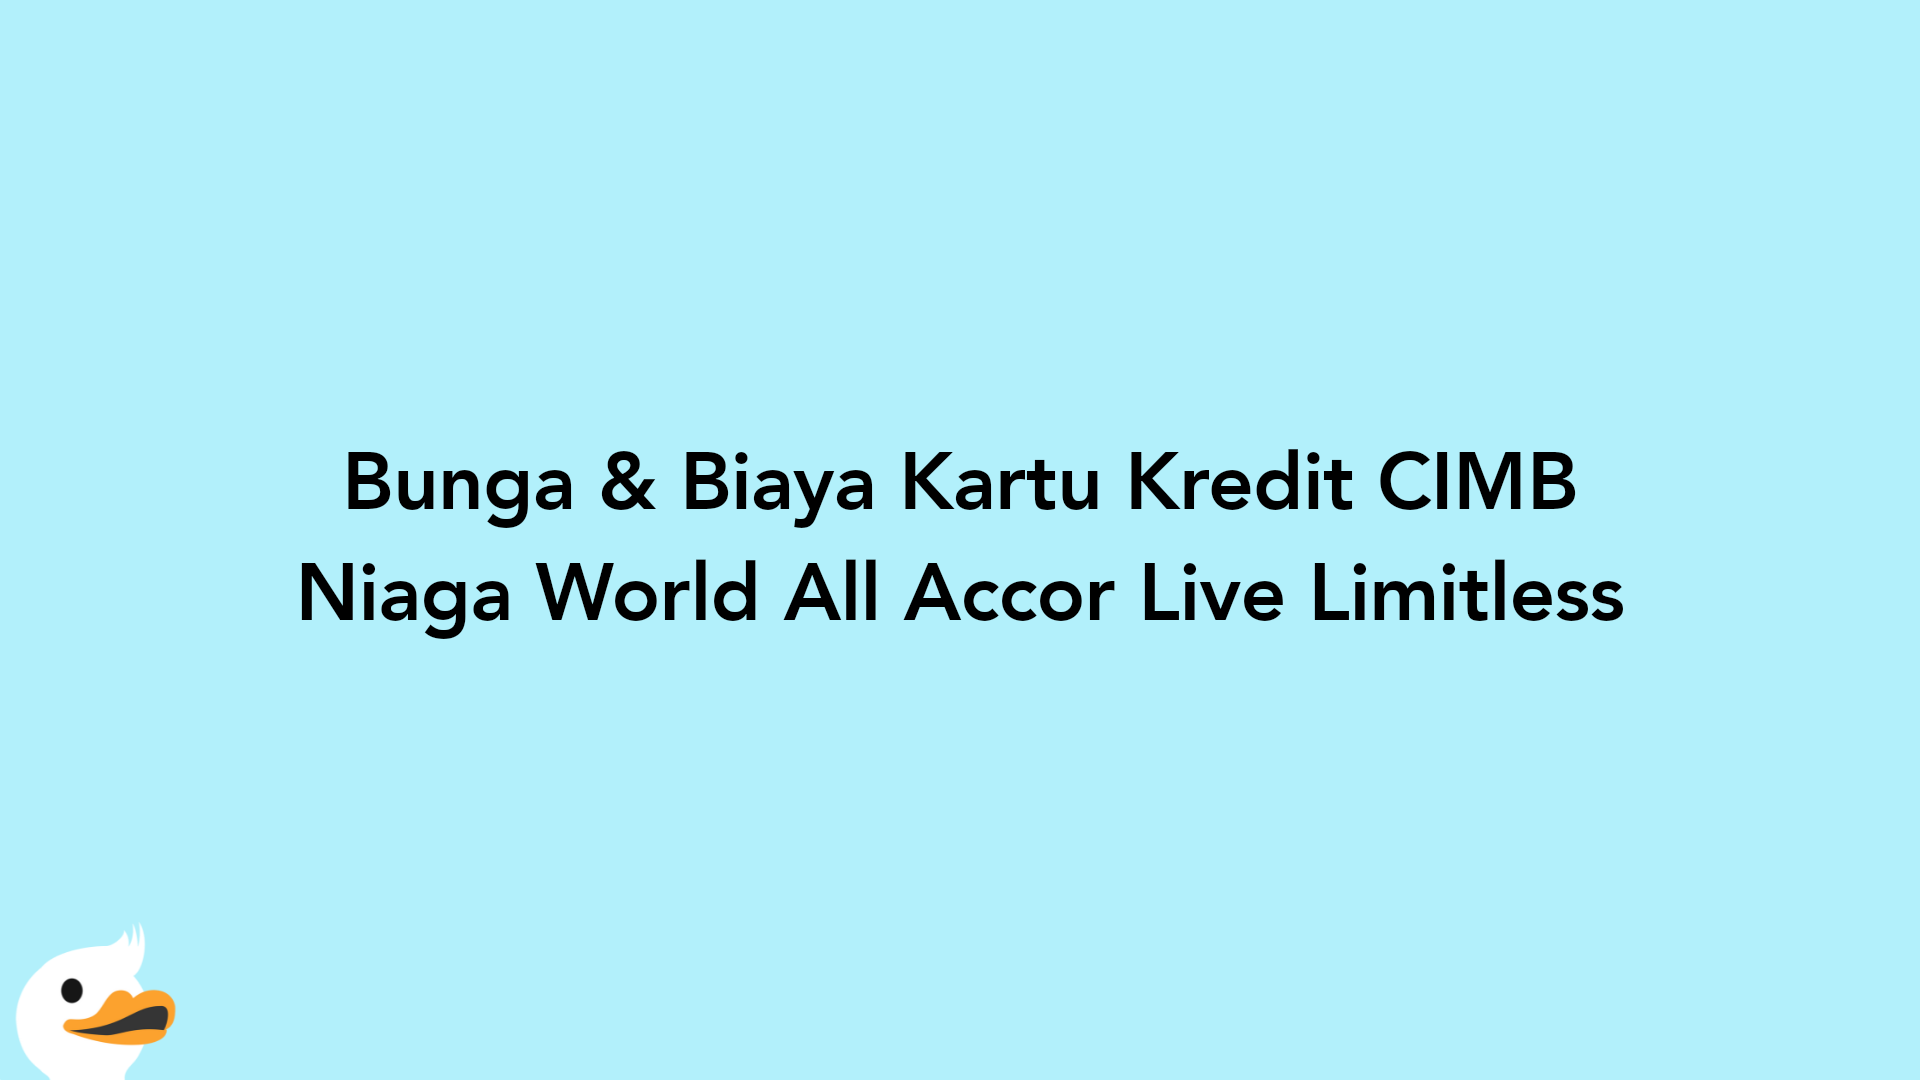 Bunga & Biaya Kartu Kredit CIMB Niaga World All Accor Live Limitless